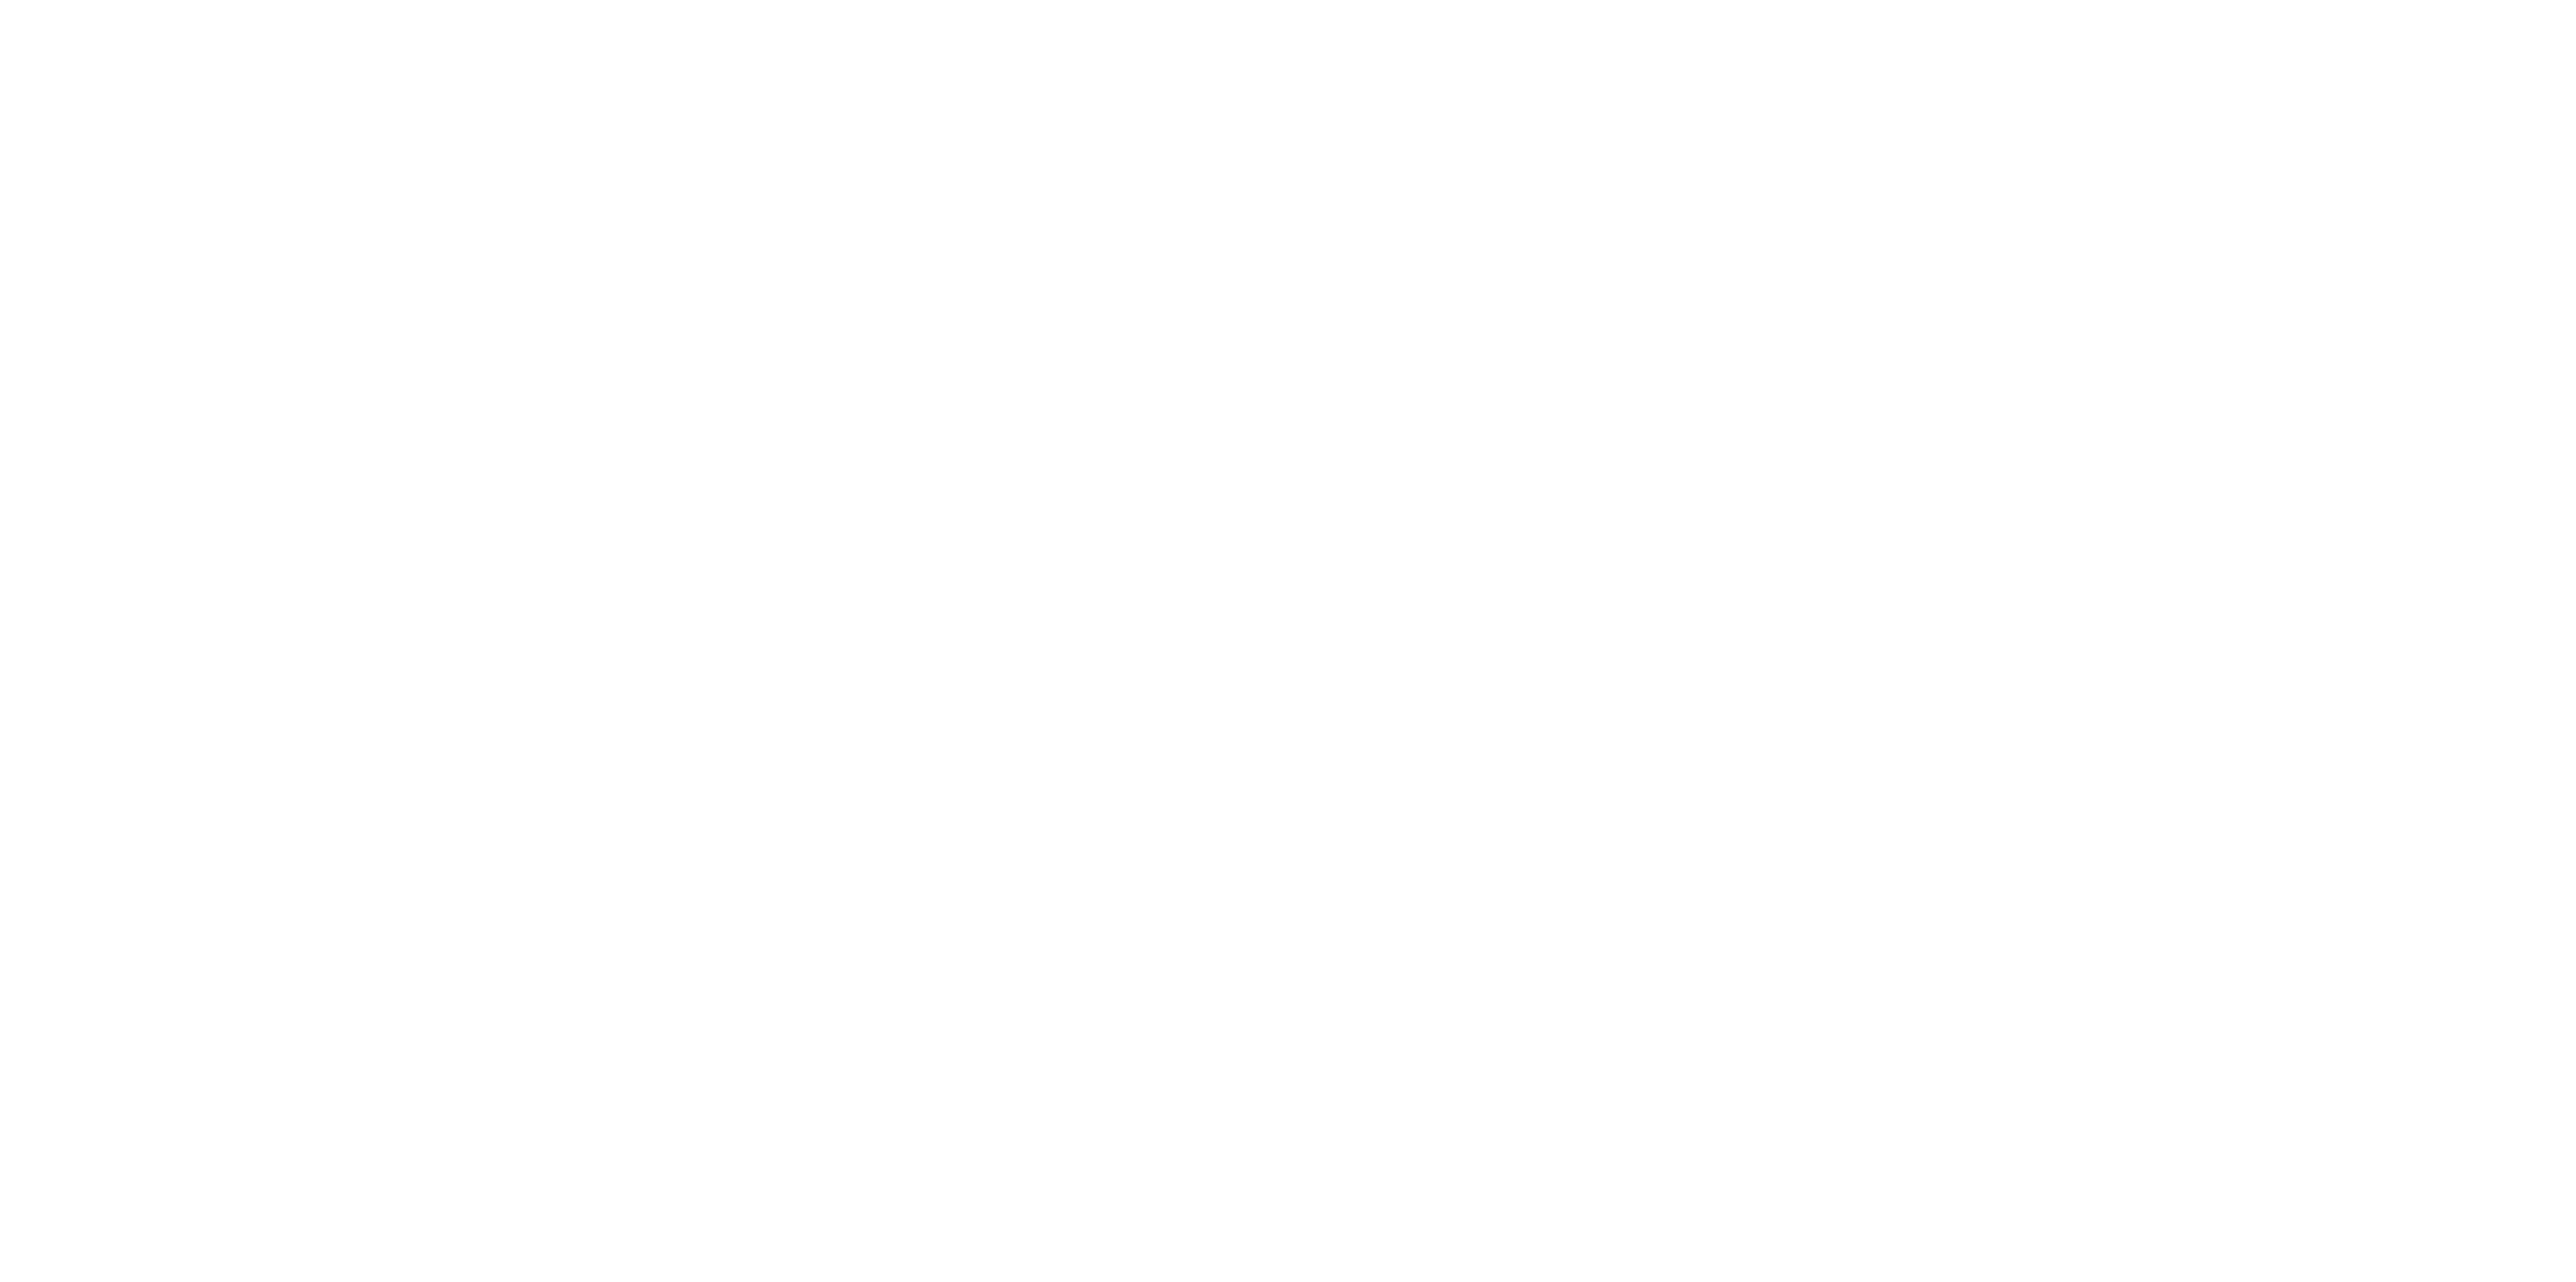 audiochuck